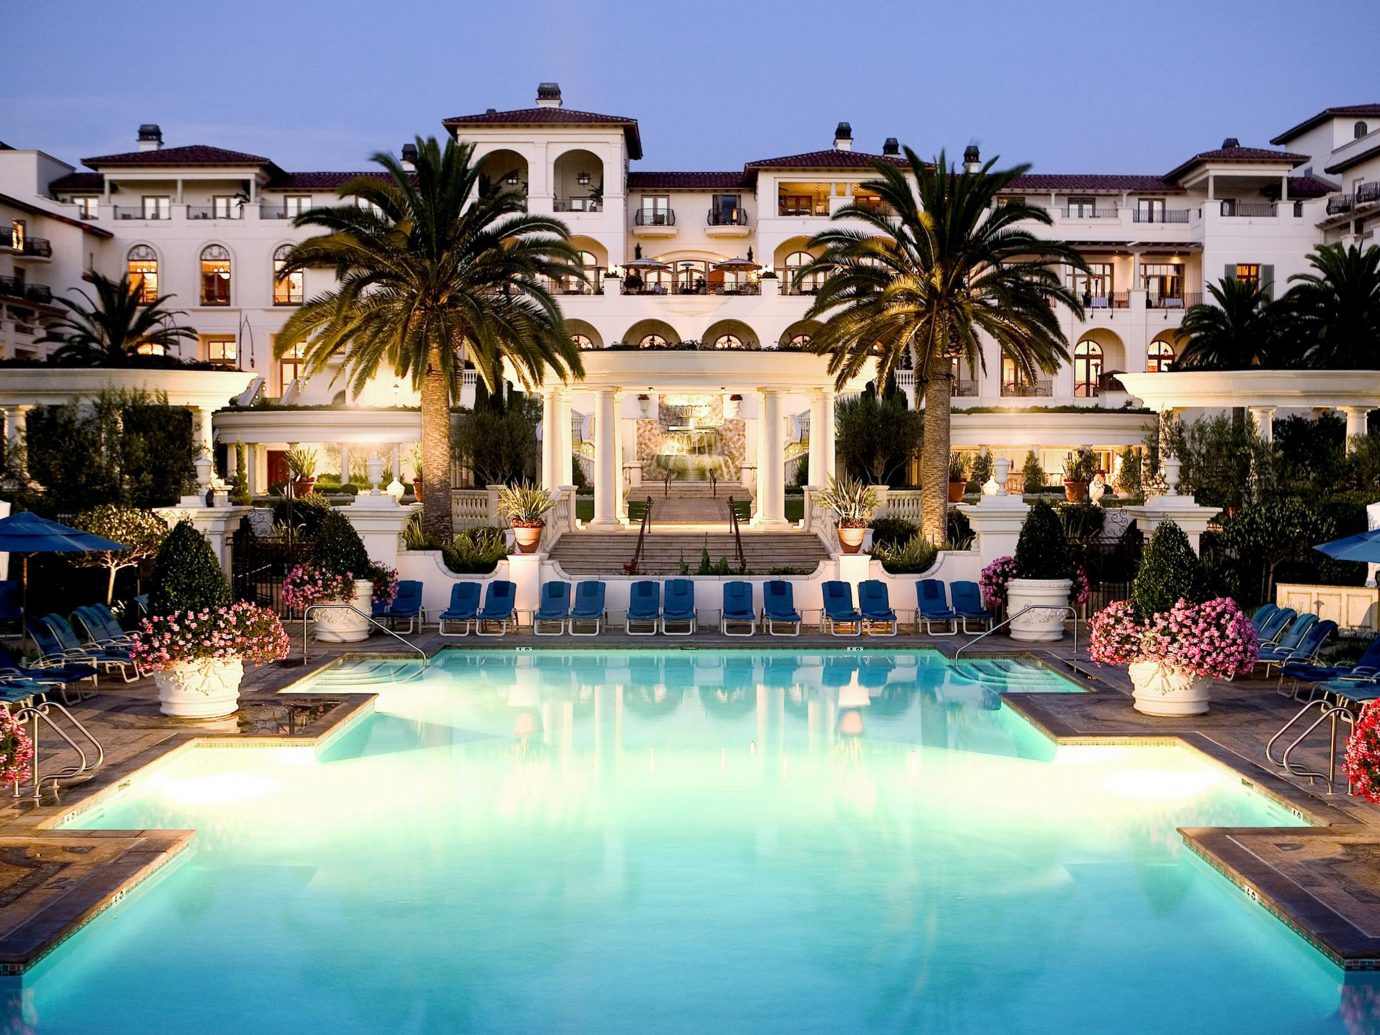 The 11 Best California Beach Hotels for Hitting the Sand Jetsetter